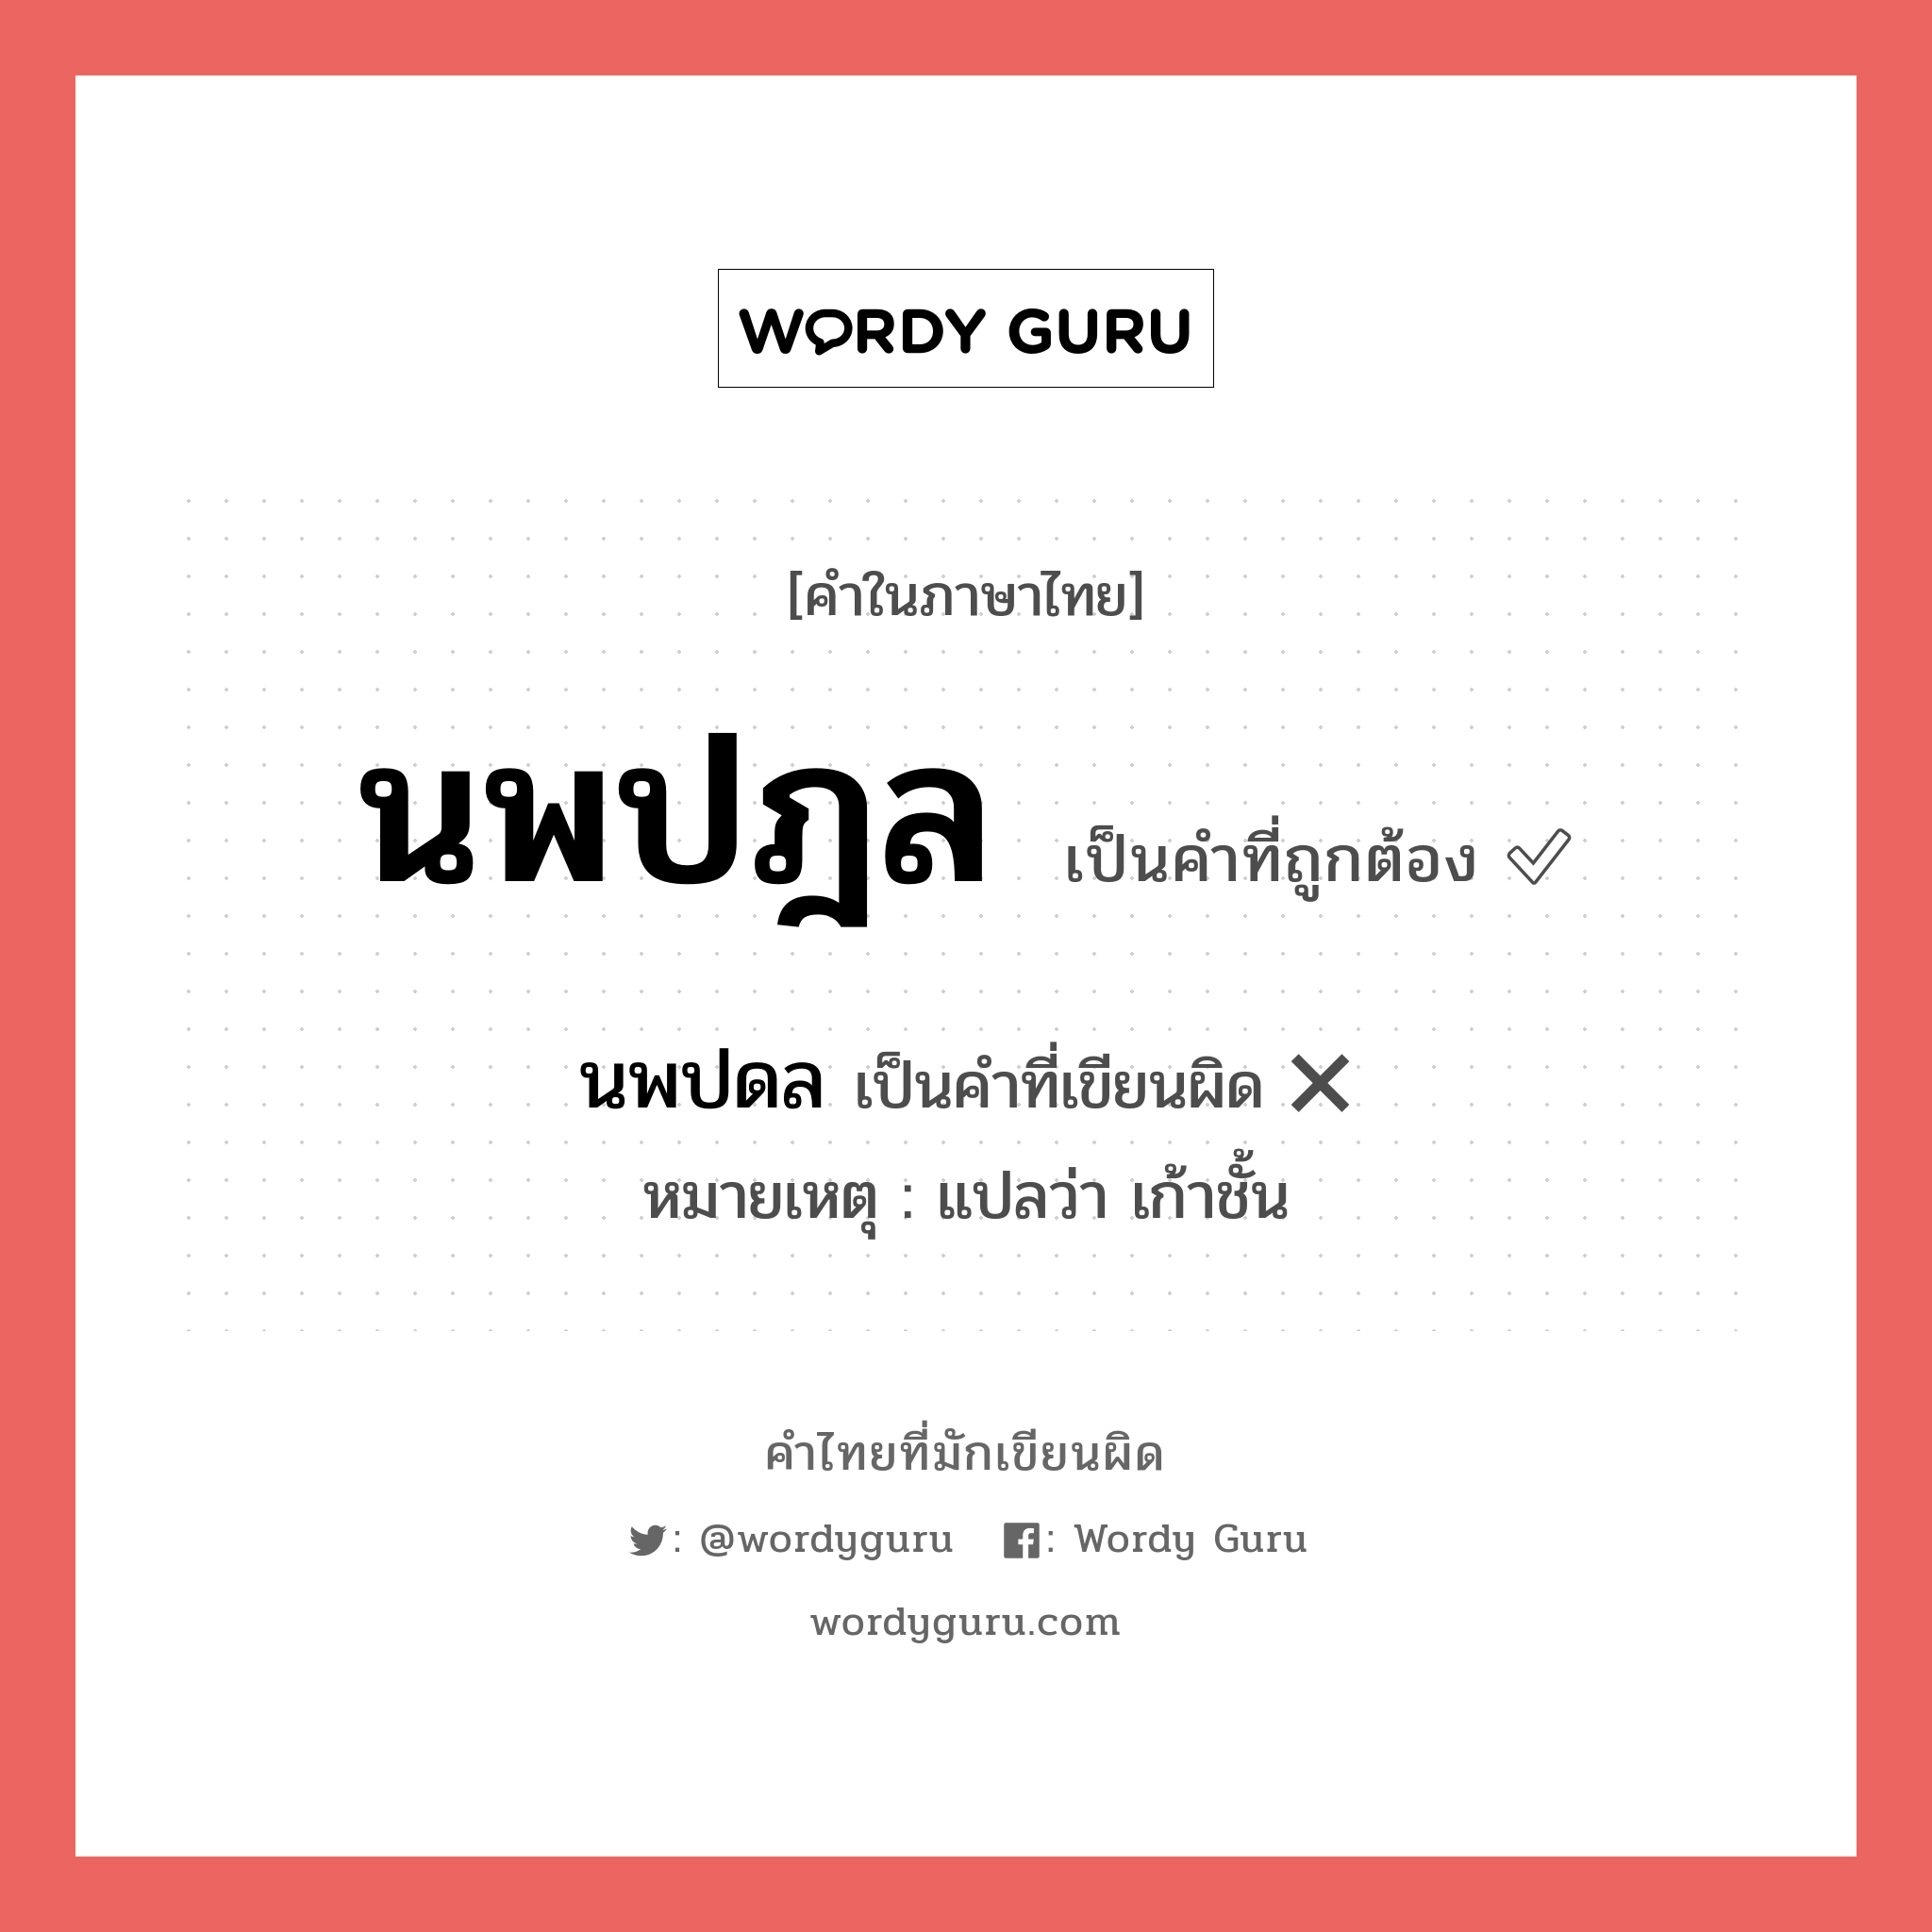 นพปดล หรือ นพปฎล คำไหนเขียนถูก?, คำในภาษาไทยที่มักเขียนผิด นพปดล คำที่ผิด ❌ นพปฎล หมายเหตุ แปลว่า เก้าชั้น